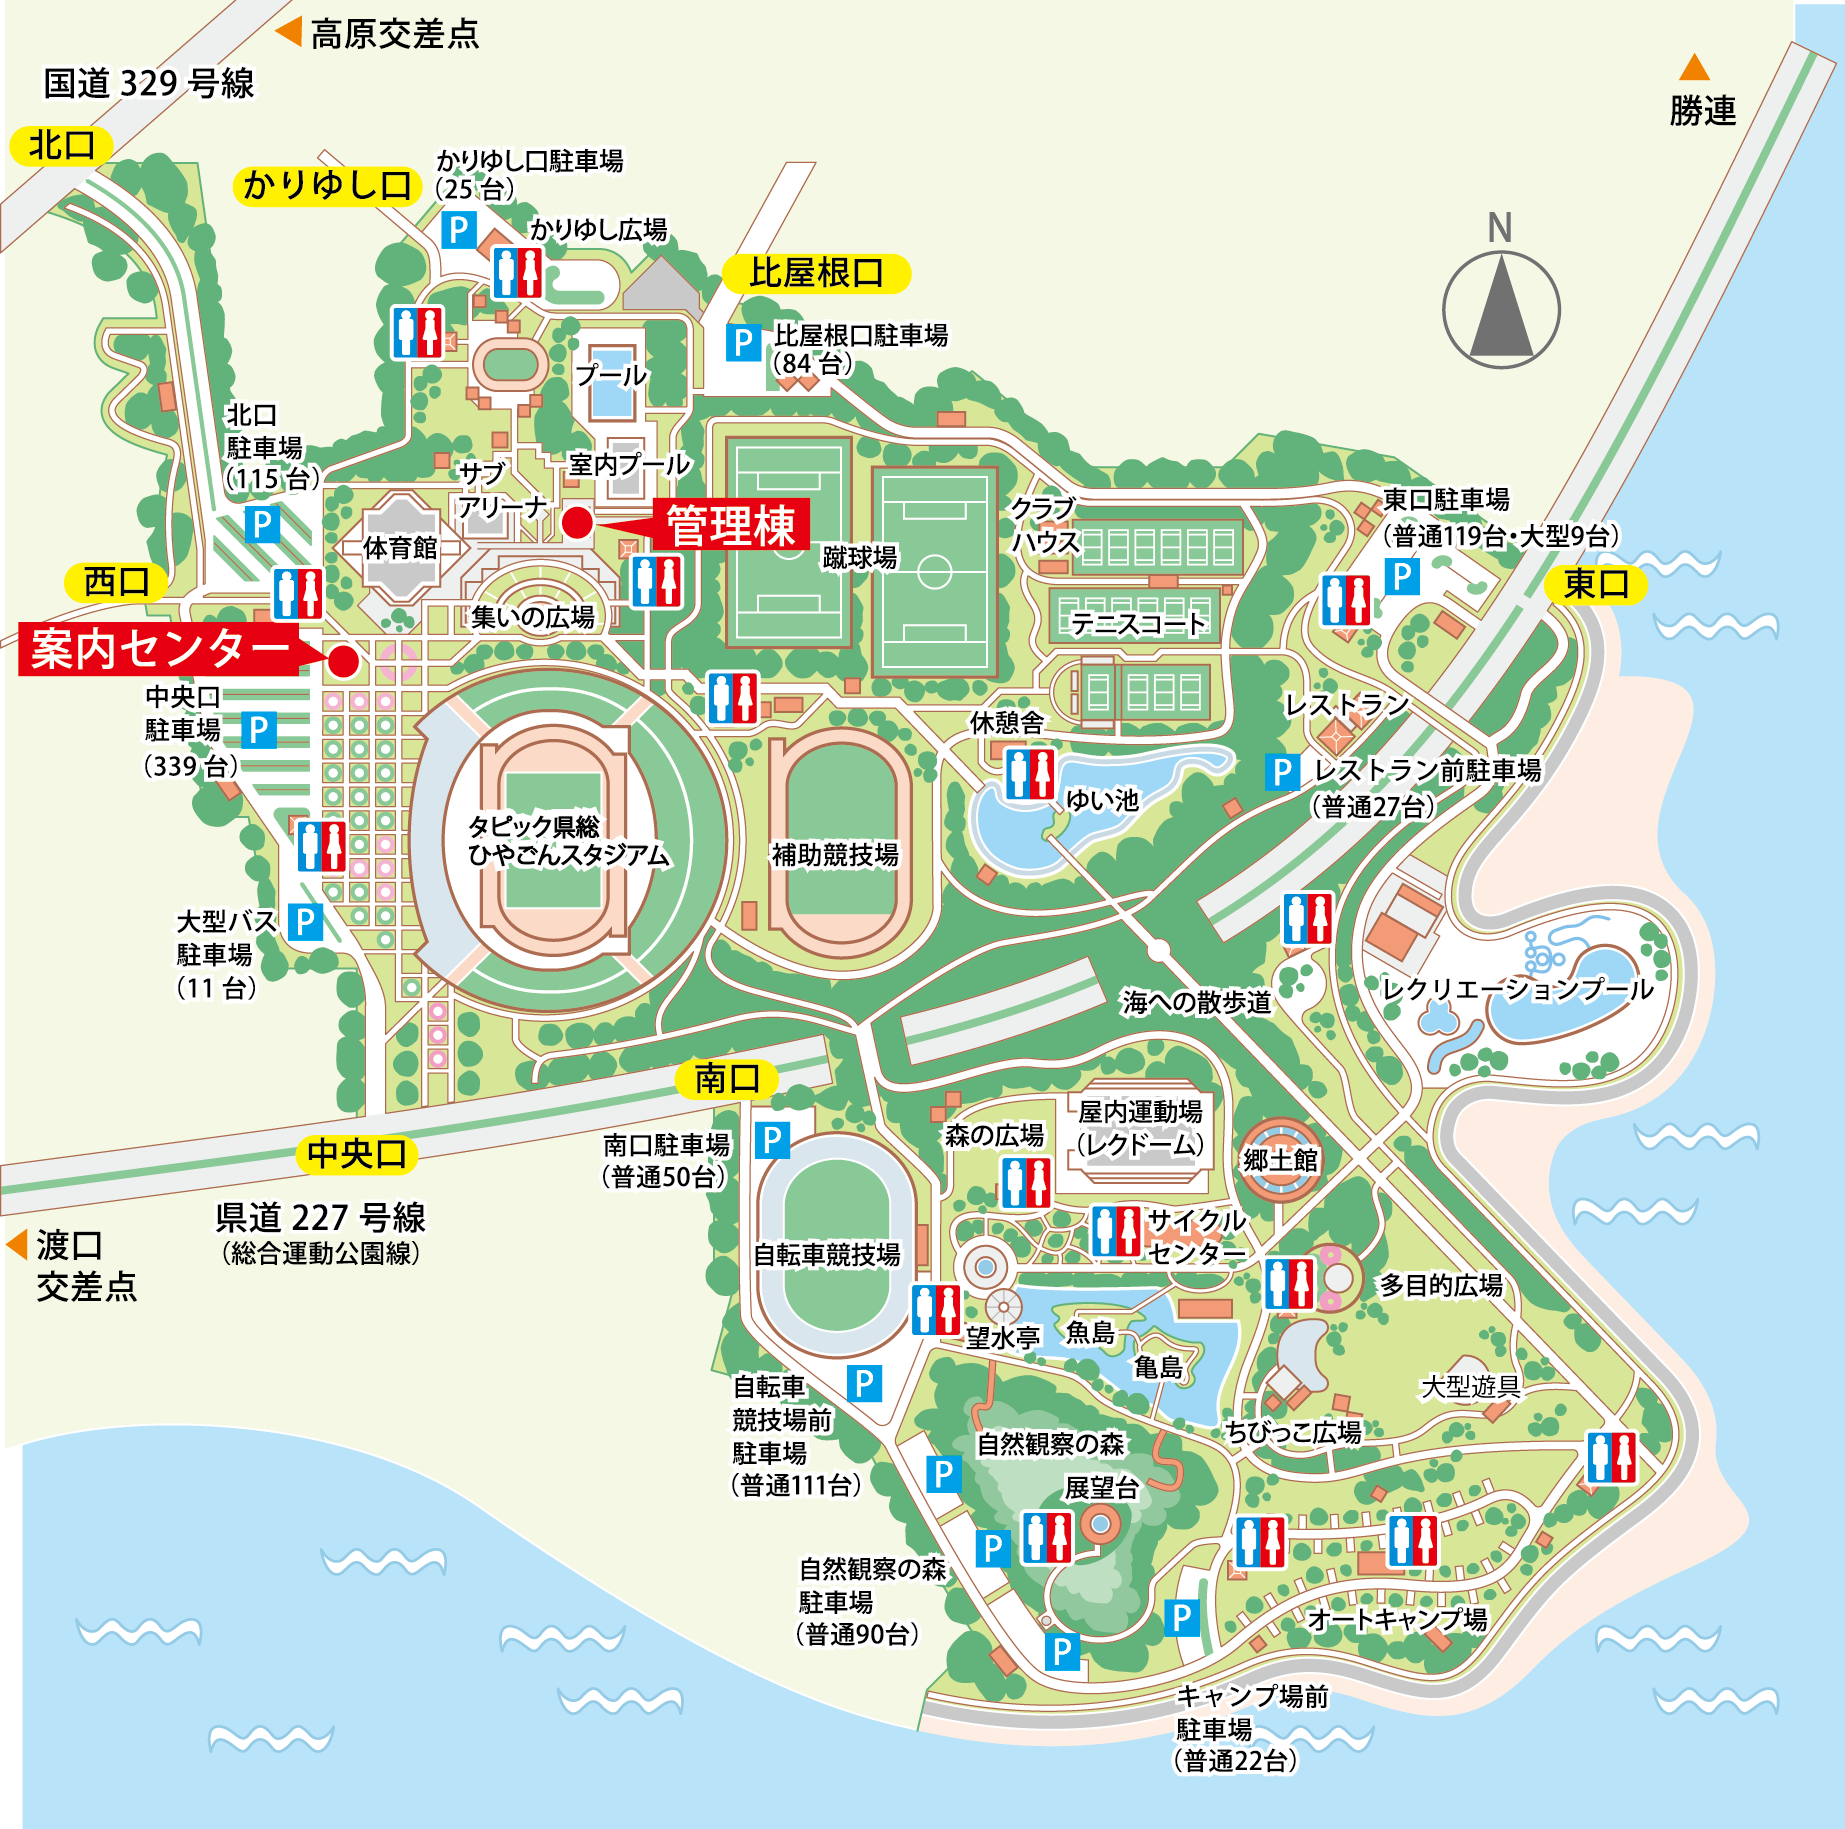 公園マップ 沖縄県総合運動公園